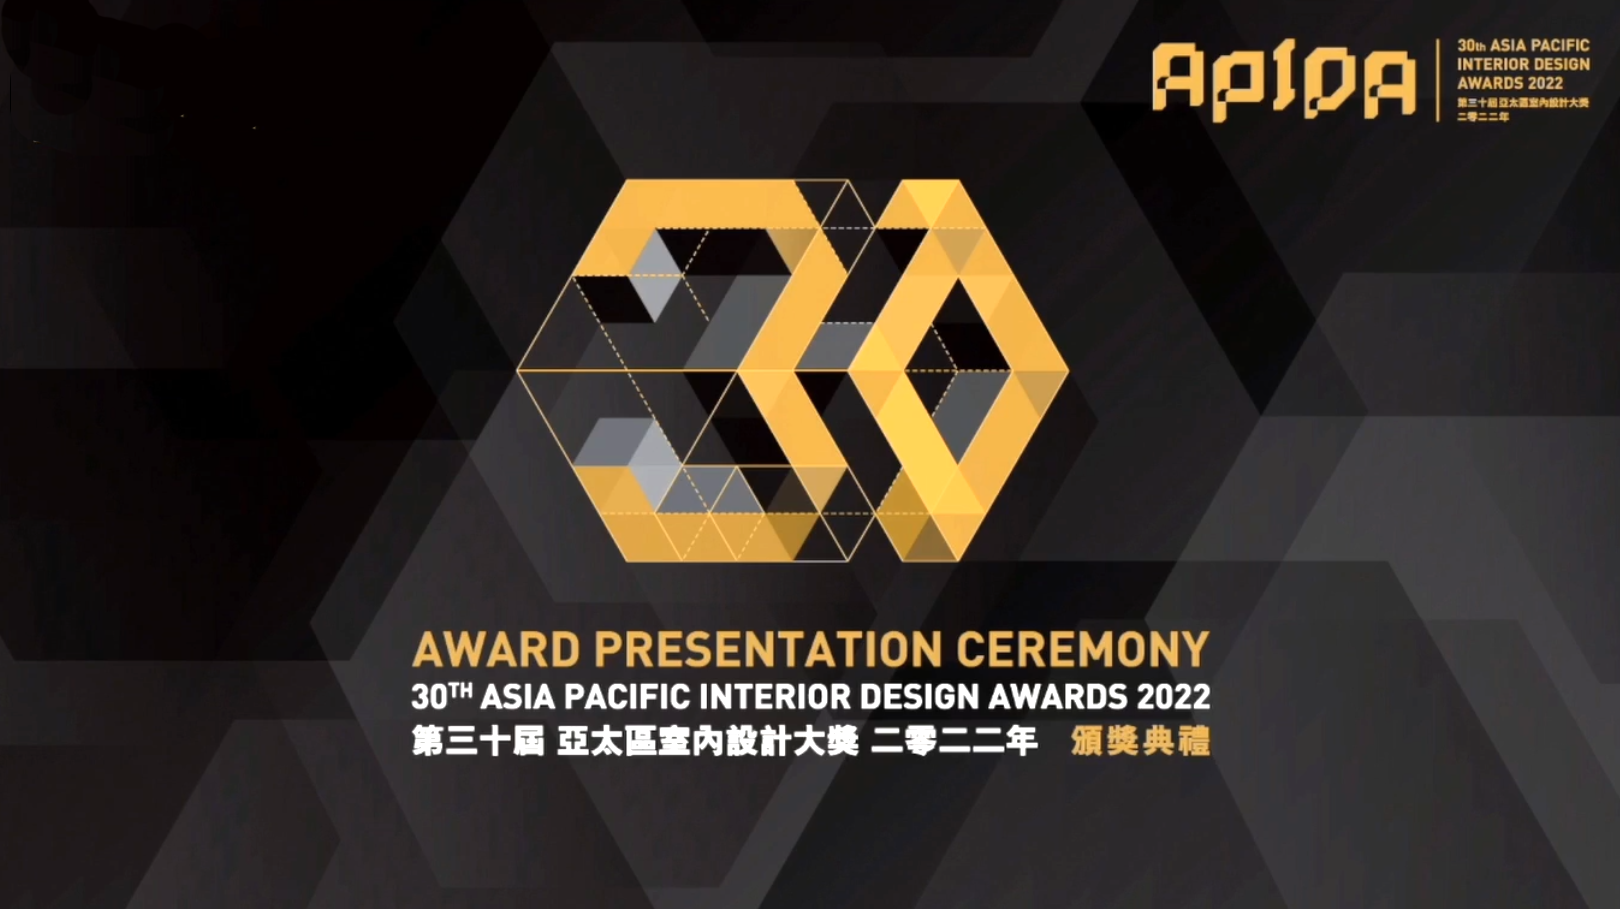 里与外创意斩获2022 APIDA 亚太区室内设计大奖多项殊荣